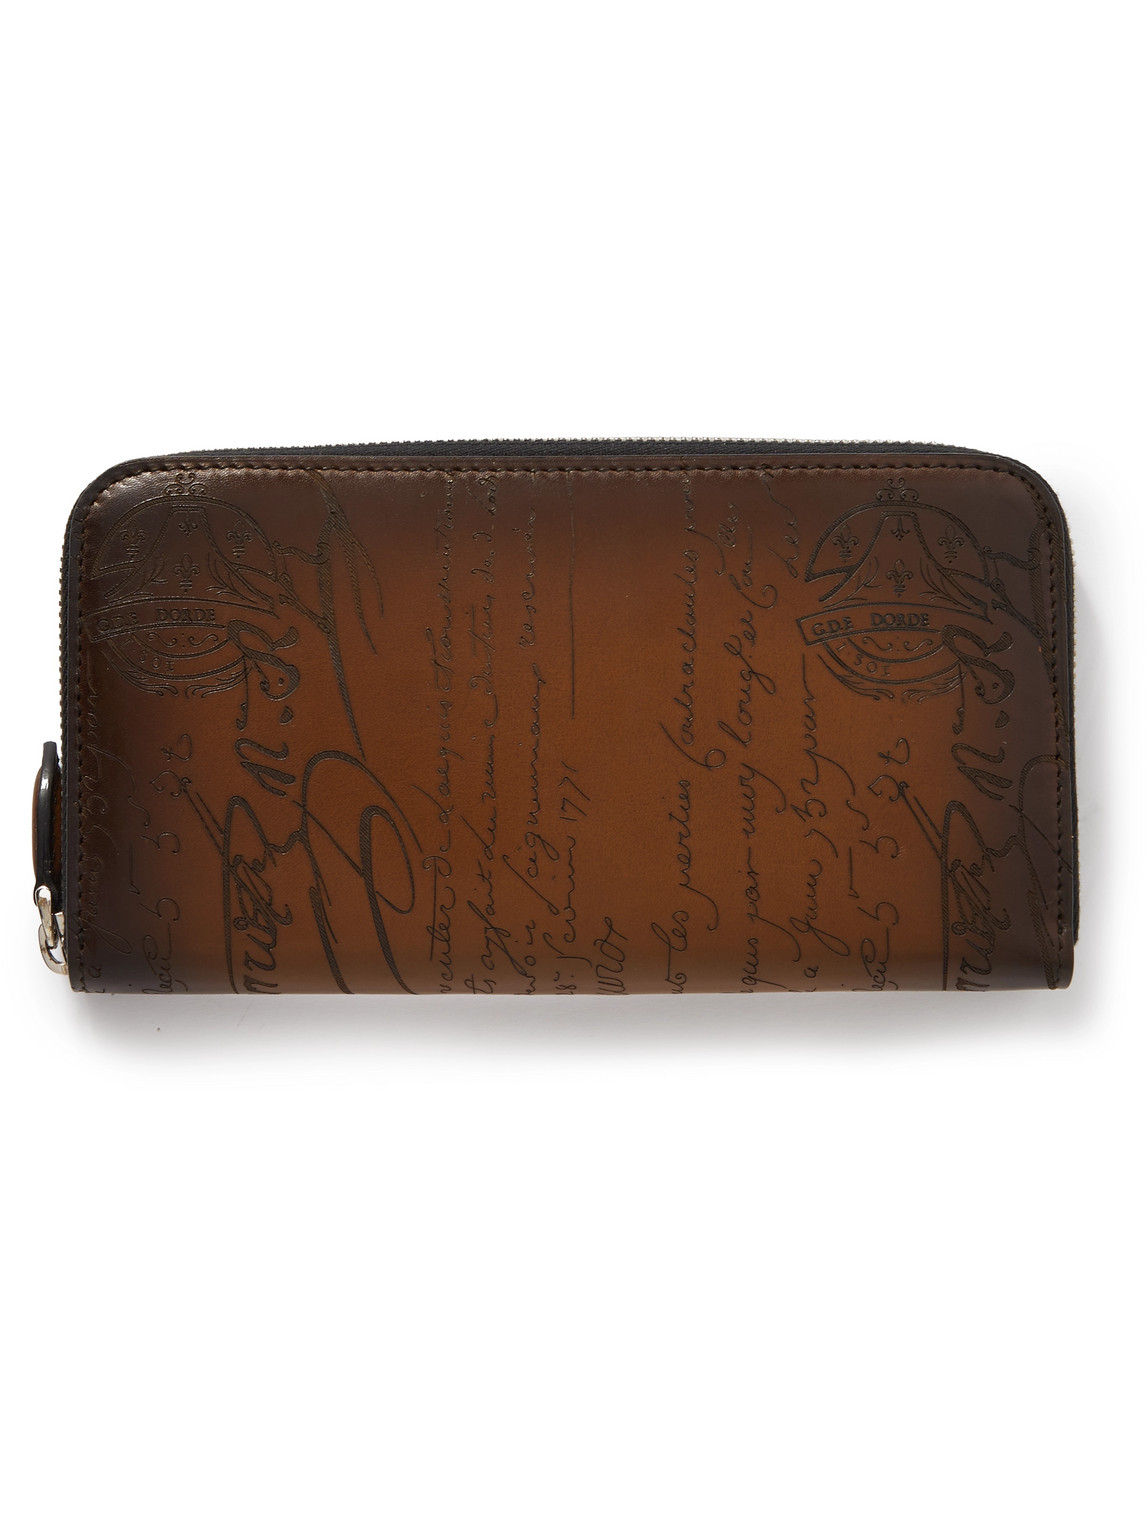 Berluti Itauba Scritto Venezia Leather Travel Wallet In Brown